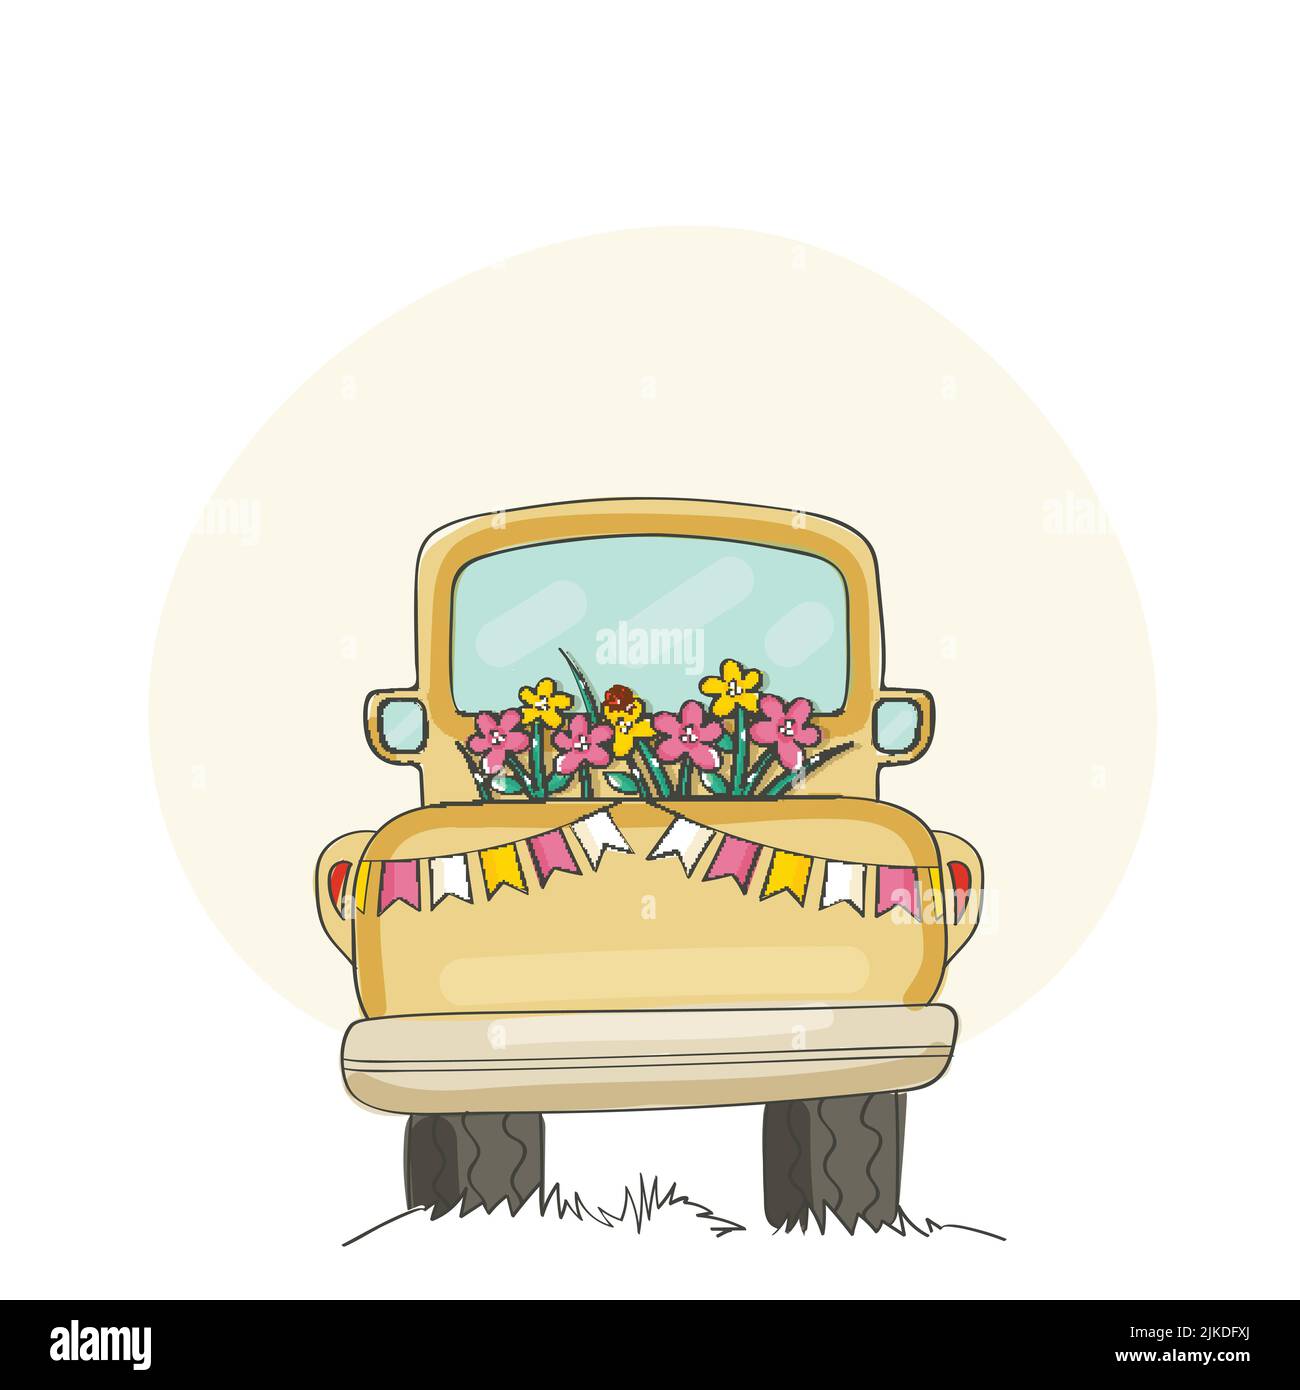 Doodle Taxi Dekoriert Mit Blumen Und Bunting Flag Auf Weißem Hintergrund. Stock Vektor